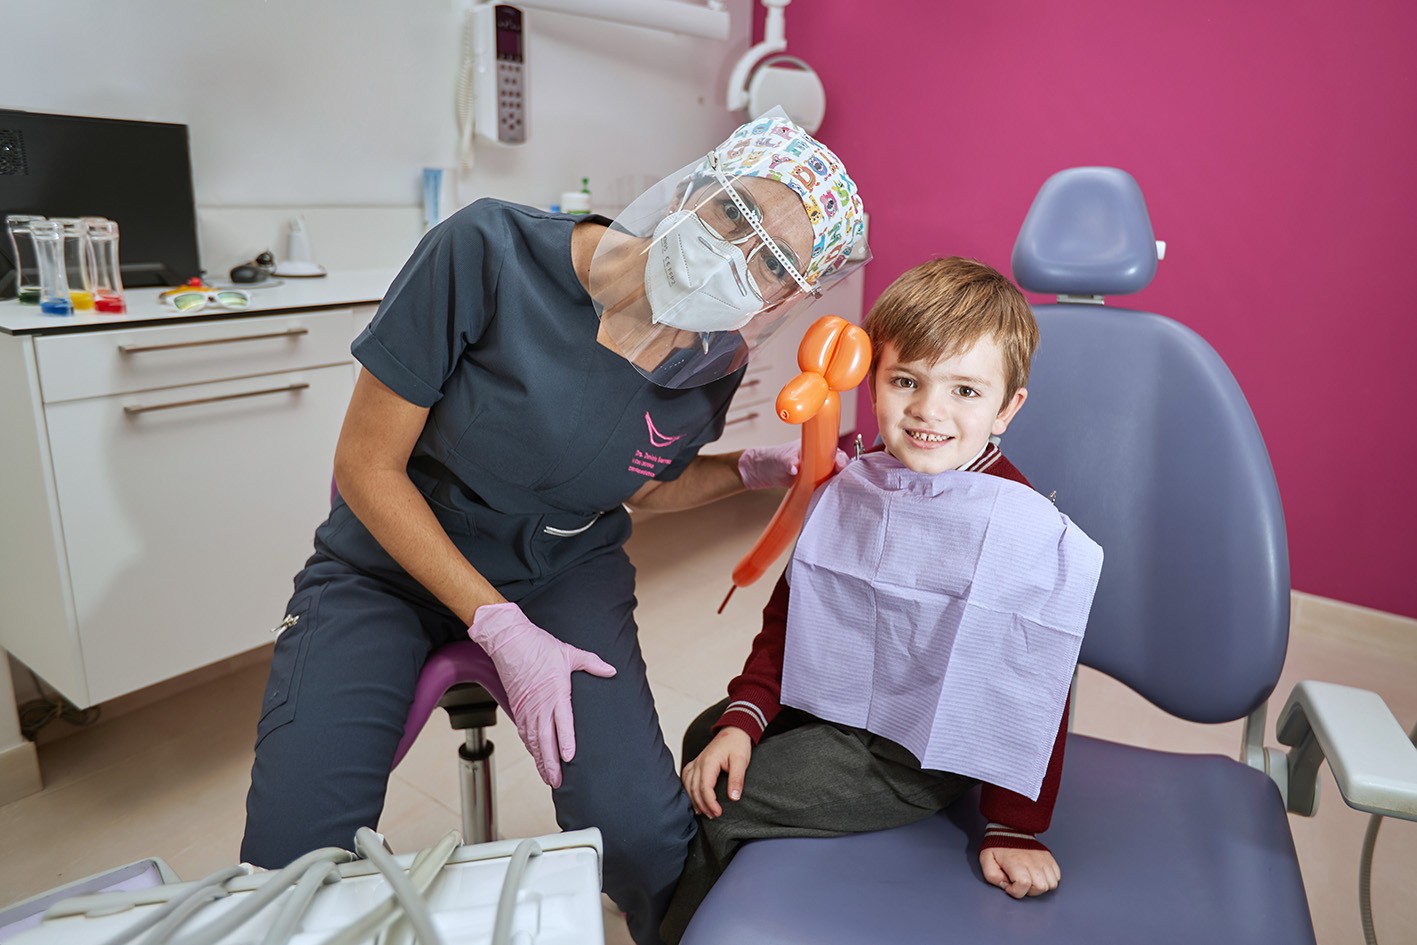 ODONTOPEDIATRÍA ESPECIALIZADA EN CLÍNICA DENTAL. ESPECIALISTAS EN REVISIONES INFANTILES Y TRATAMIENTOS DENTALES PARA NIÑOS Y JÓVENES. En Clinica Dental Esther Maján, disponemos de un área especializada de odontopediatría con odontólogos pediatras especializados en revisiones y todo tipo de tratamientos dentales para niños y jóvenes. En Clínica Dental Esther Maján, cuidamos de la salud dental de sus hijos mediante el control y la aplicación de las últimas tecnologías en el ámbito dental para los niños y jóvenes tengan sus dientes perfectos. En este sentido, además una salud bucal es un síntoma de una óptima salud general y para ello trabajan nuestros dentistas pedriatrícos. Consúltenos y estableceremos un protocolo a través de nuestros odontopediatras para evaluar y controlar el desarrollo de la dentadura de sus hijos y así evitar problemas futuros. CLINICAS-DENTALES-MOSTOLES-DENTISTAS-MÓSTOLES-TRATAMIENTOS-DENTALES-ECONOMICOS-TAC-DENTAL-BARATOS-DENTISTA-RECOMENDABLE-DE-CONFIANZA-PARQUE-COIMBRA-FAMILIAS-NUMEROSAS CLINICA DENTAL EN MOSTOLES – CLINICAS DENTALES EN MOSTOLES – DENTISTAS EN MOSTOLES – DENTISTA EN MOSTOLES – DENTISTA MOSTOLES – DENTISTAS MOSTOLES – DENTISTAS ECONOMICOS BARATOS EN MOSTOLES – CLINICAS DENTALES ECONOMICAS BARATAS EN MOSTOLES – DENTISTA CON BUENAS OPINIONES EN MOSTOLES – DENTISTAS CON BUENAS OPINIONES EN MOSTOLES – CLINICA DENTAL CON BUENAS OPINIONES EN MOSTOLES – CLINICAS DENTALES CON BUENAS OPINIONES EN MOSTOLES – CLÍNICA DENTAL EN MÓSTOLES – CLÍNICAS DENTALES EN MÓSTOLES – DENTISTAS EN MÓSTOLES – DENTISTA EN MÓSTOLES – DENTISTA MÓSTOLES – DENTISTAS MÓSTOLES – DENTISTAS ECONÓMICOS BARATOS EN MÓSTOLES – CLÍNICAS DENTALES ECONÓMICAS BARATAS EN MÓSTOLES – DENTISTA CON BUENAS OPINIONES EN MÓSTOLES – DENTISTAS CON BUENAS OPINIONES EN MÓSTOLES – CLÍNICA DENTAL CON BUENAS OPINIONES EN MÓSTOLES – CLÍNICAS DENTALES CON BUENAS OPINIONES EN MÓSTOLES – CLÍNICA DENTAL CON PRECIOS ESPECIALES, OFERTAS, PROMOCIOINES Y DESCUENTOS PARA FAMILIAS NUMEROSAS EN MOSTOLES (MADRID) – CLÍNICAS DENTALES CON PRECIOS ESPECIALES, OFERTAS, PROMOCIONES Y DESCUENTOS PARA FAMILIAS NUMEROSAS EN MÓSTOLES (MADRID). DENTISTAS EN MOSTOLES – DENTISTA EN MOSTOLES – DENTISTA MOSTOLES – DENTISTAS MOSTOLES – DENTISTAS ECONOMICOS BARATOS EN MOSTOLES – CLINICAS DENTALES ECONOMICAS BARATAS EN MOSTOLES – ORTODONCISTA EN MOSTOLES – ORTODONCISTAS EN MOSTOLES – BUEN DENTISTA EN MOSTOLES – BUENA CLINICA DENTAL EN MOSTOLES – DENTISTA RECOMENDABLE EN MOSTOLES – DENTISTAS RECOMENDABLES EN MOSTOLES – CLÍNICA DENTAL EN MÓSTOLES – CÍINICAS DENTALES EN MÓSTOLES – DENTISTAS EN MÓSTOLES – DENTISTA EN MÓSTOLES – DENTISTA MÓSTOLES – DENTISTAS MÓSTOLES – DENTISTAS ECONÓMICOS BARATOS EN MÓSTOLES – CLÍNICAS DENTALES ECONÓMICAS BARATAS EN MÓSTOLES – ORTODONCISTA EN MÓSTOLES – ORTODONCISTAS EN MÓSTOLES – BUEN DENTISTA EN MÓSTOLES – BUENA CLÍNICA DENTAL EN MÓSTOLES – DENTISTA RECOMENDABLE EN MÓSTOLES – DENTISTAS RECOMENDABLES EN MÓSTOLES – DENTISTAS CON PRECIOS ESPECIALES, OFERTAS, PROMOCIOINES Y DESCUENTOS PARA FAMILIAS NUMEROSAS EN MOSTOLES (MADRID) – DENTISTA CON PRECIOS ESPECIALES, OFERTAS, PROMOCIONES Y DESCUENTOS PARA FAMILIAS NUMEROSAS EN MÓSTOLES (MADRID).